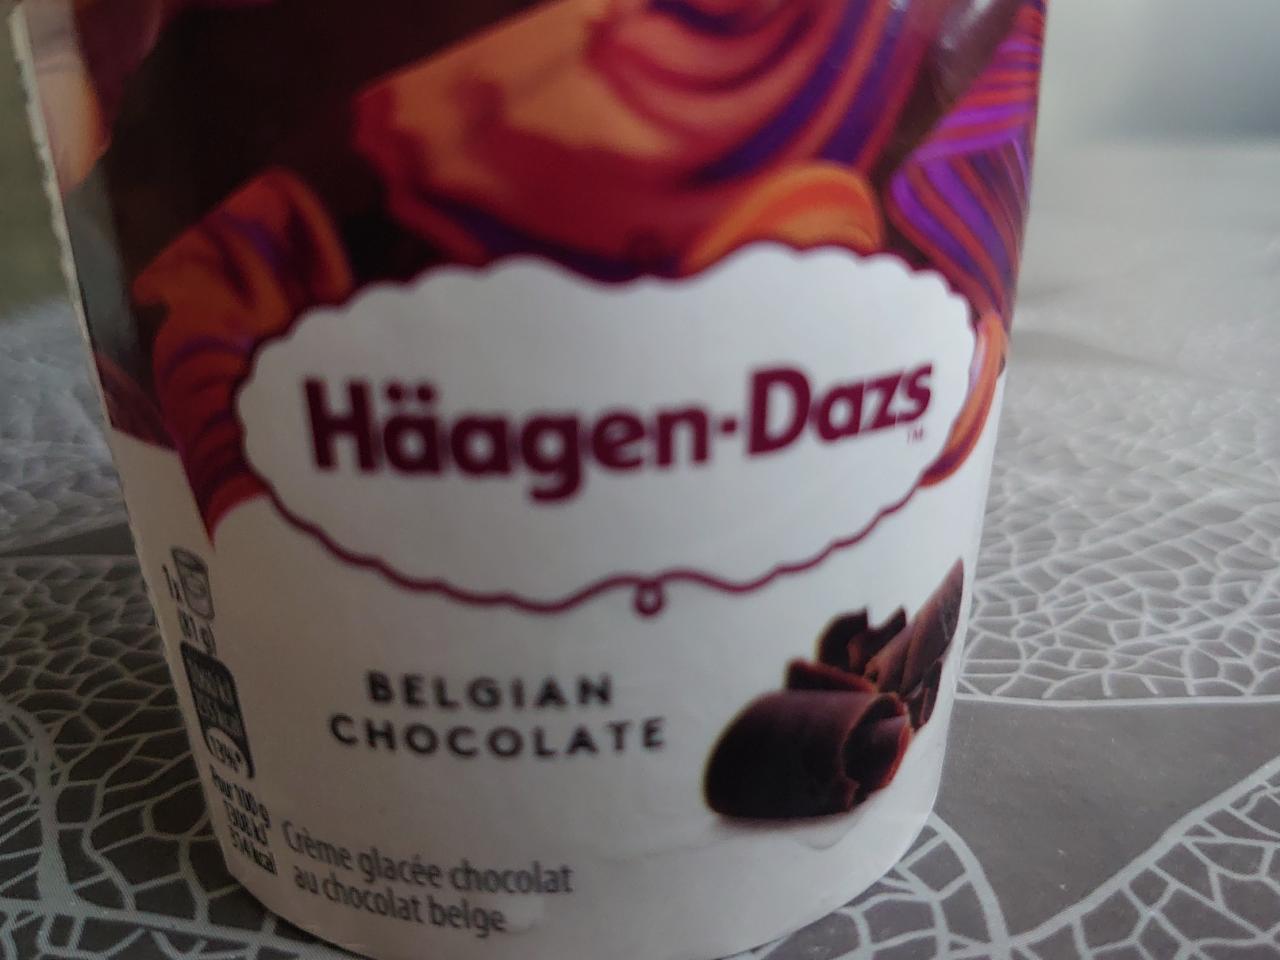 Фото - мороженое шоколадное Belgian chocolate Häagen-Dazs